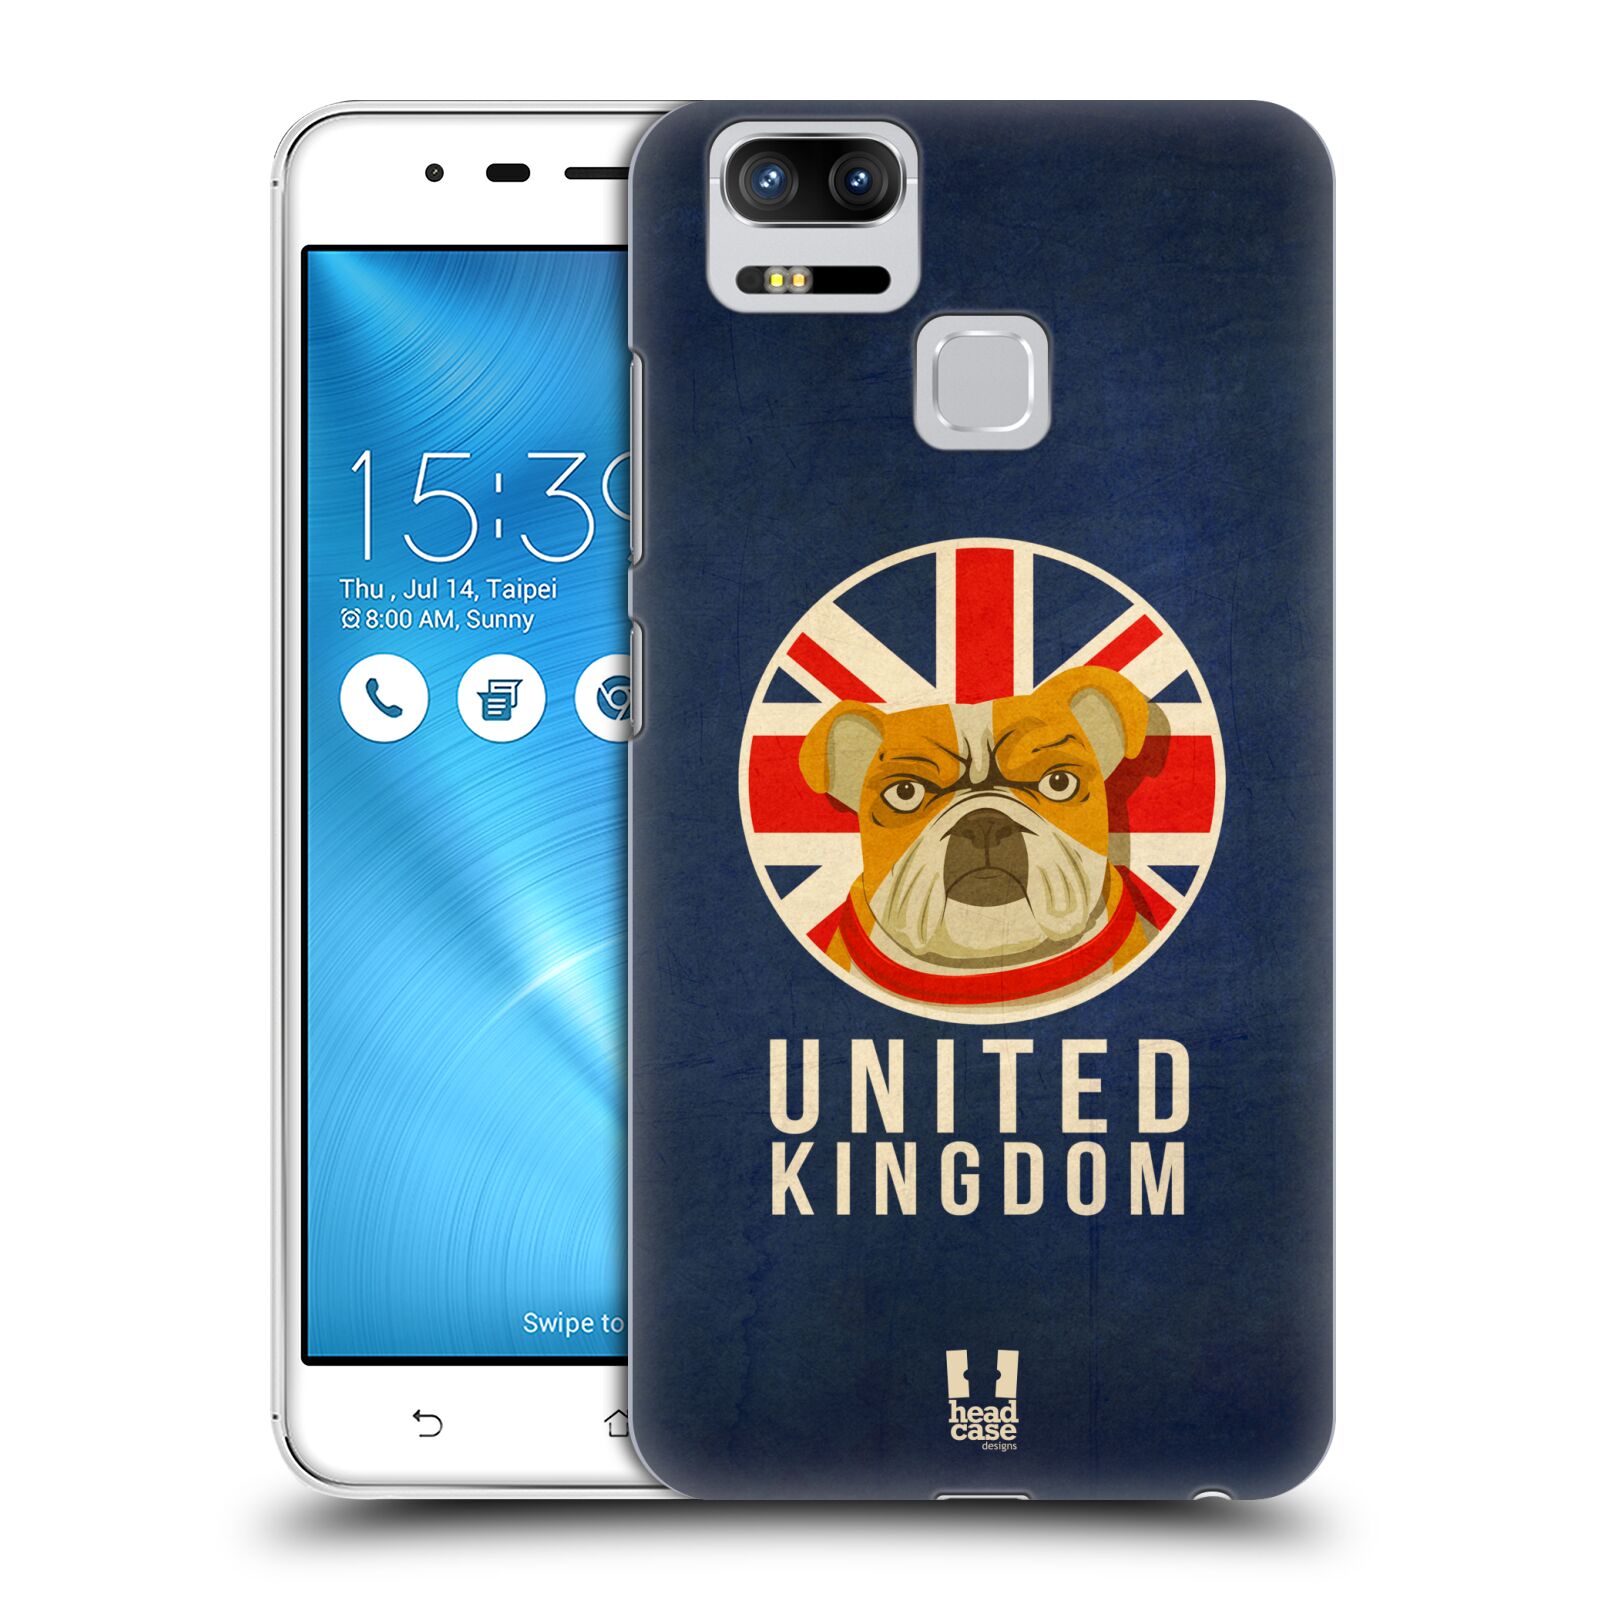 HEAD CASE plastový obal na mobil Asus Zenfone 3 Zoom ZE553KL vzor Patriotismus zvíře symbol Buldok UK